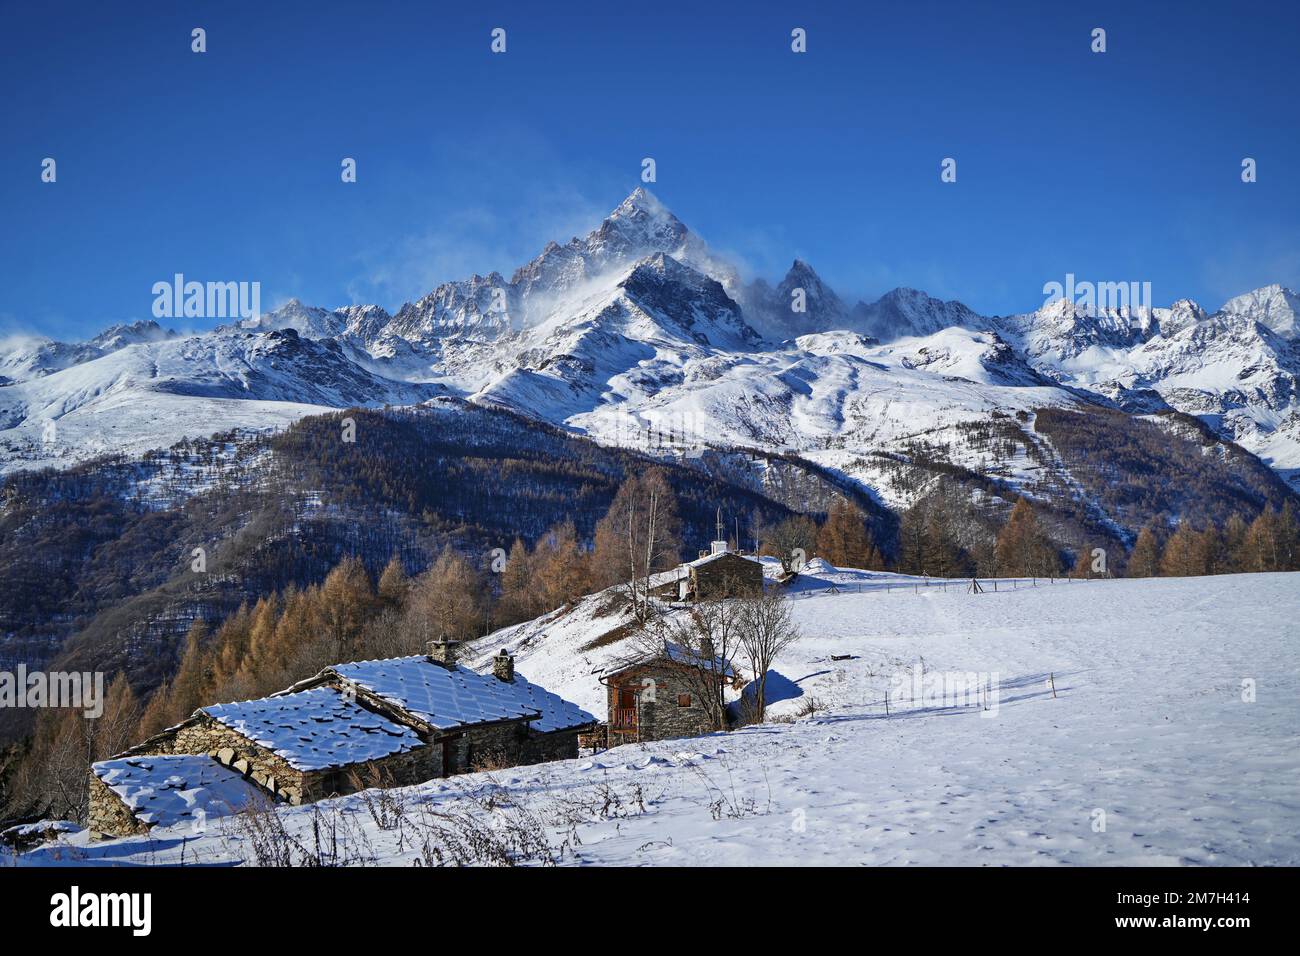 Monviso, 3.842 Meter, ist der König der Alpen, imposant und majestätisch in seiner schneebedeckten Schönheit. Eine atemberaubende Aussicht vom Dorf Ostana in Piemont, Stockfoto